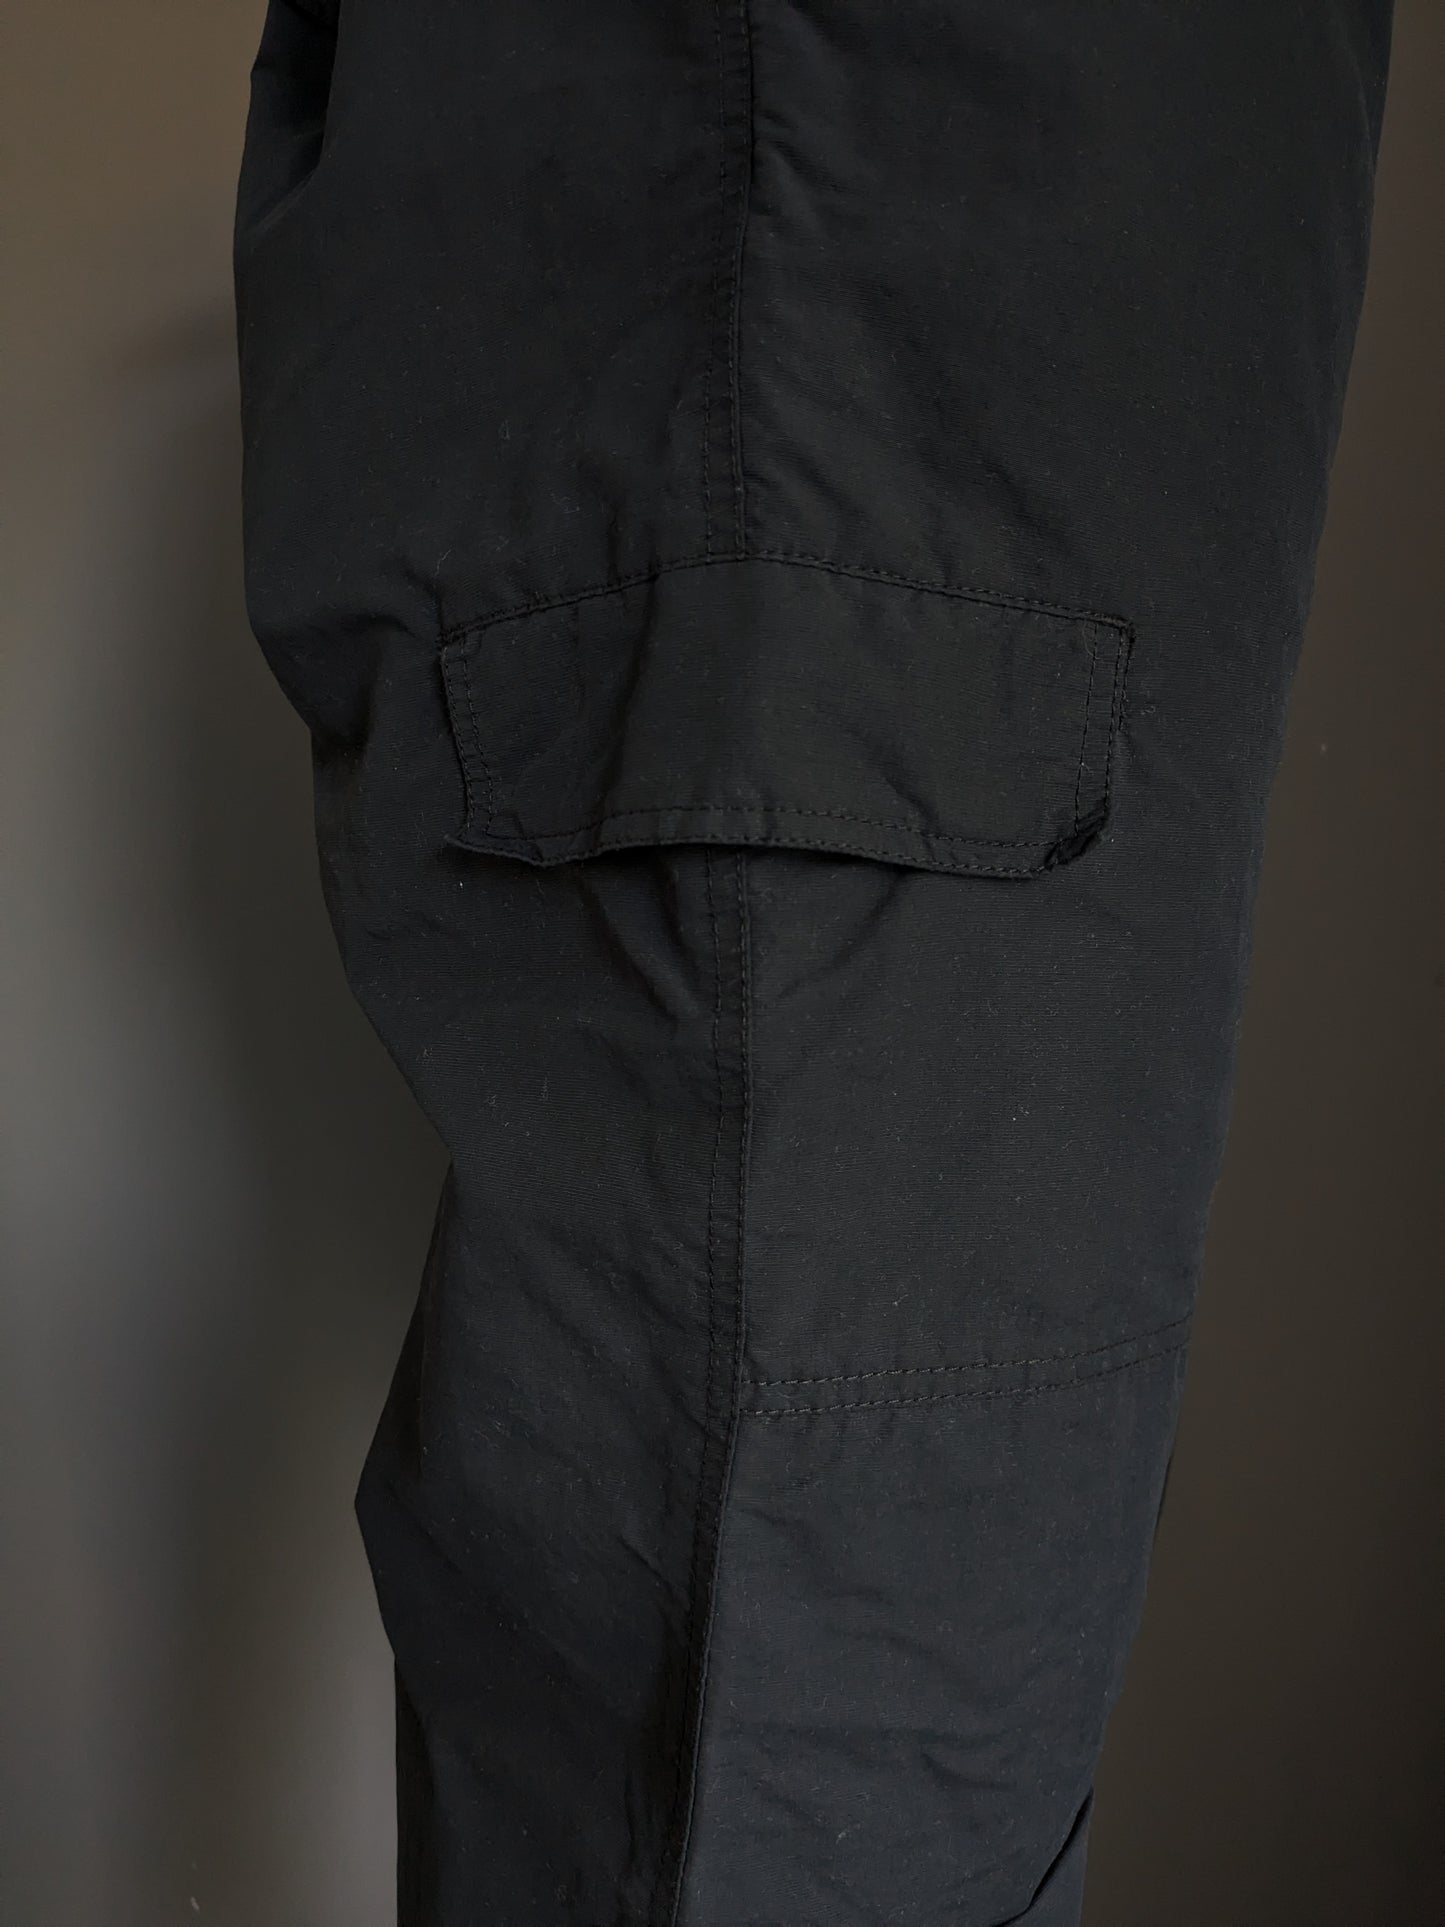 Pantalon extérieur Tenson. Doublure chaude douce. Couleur noire. Taille 54 / L.